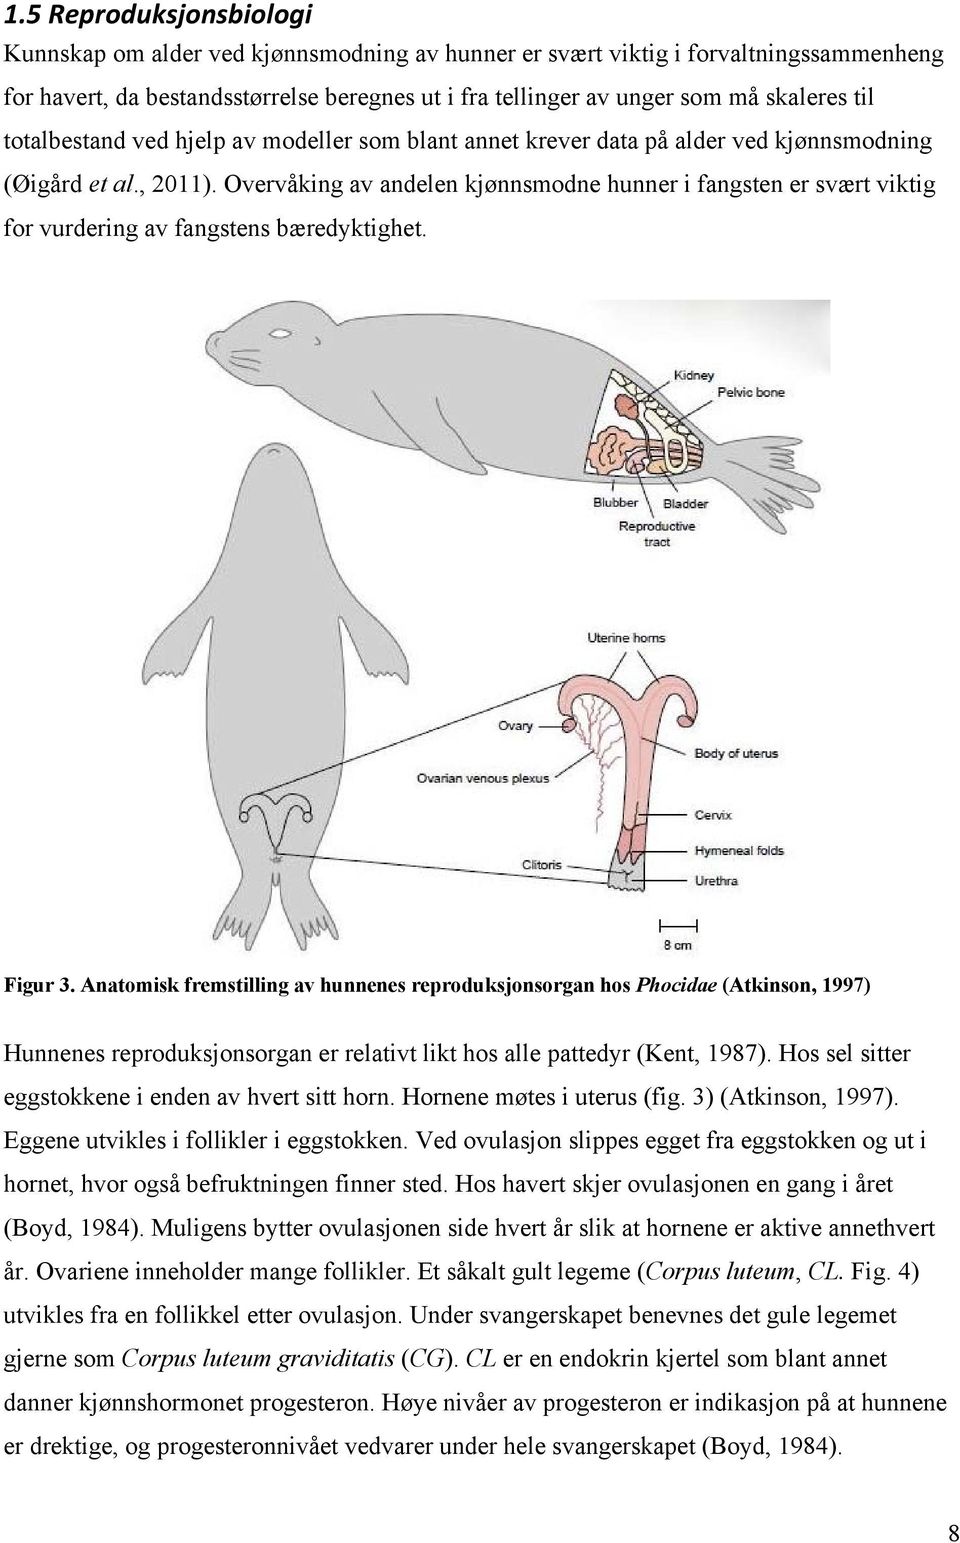 Overvåking av andelen kjønnsmodne hunner i fangsten er svært viktig for vurdering av fangstens bæredyktighet. Figur 3.